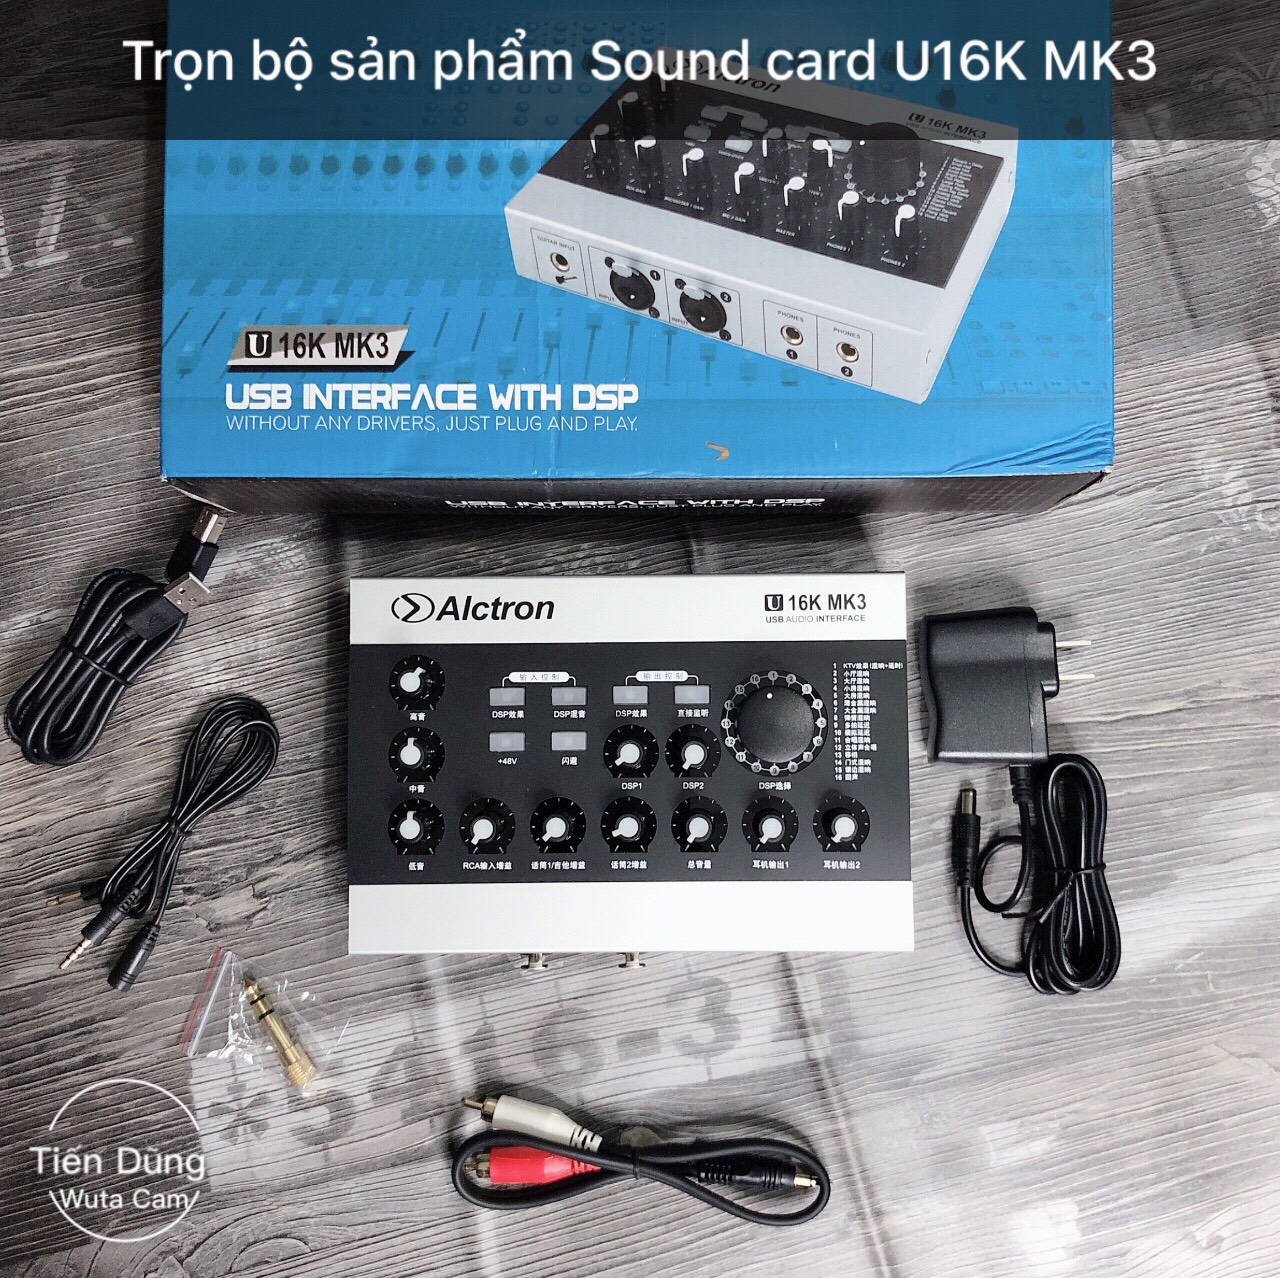 Mic live stream Sound card alctron U16k KM3 đi mic Takstar SM8B Chân dây livestream